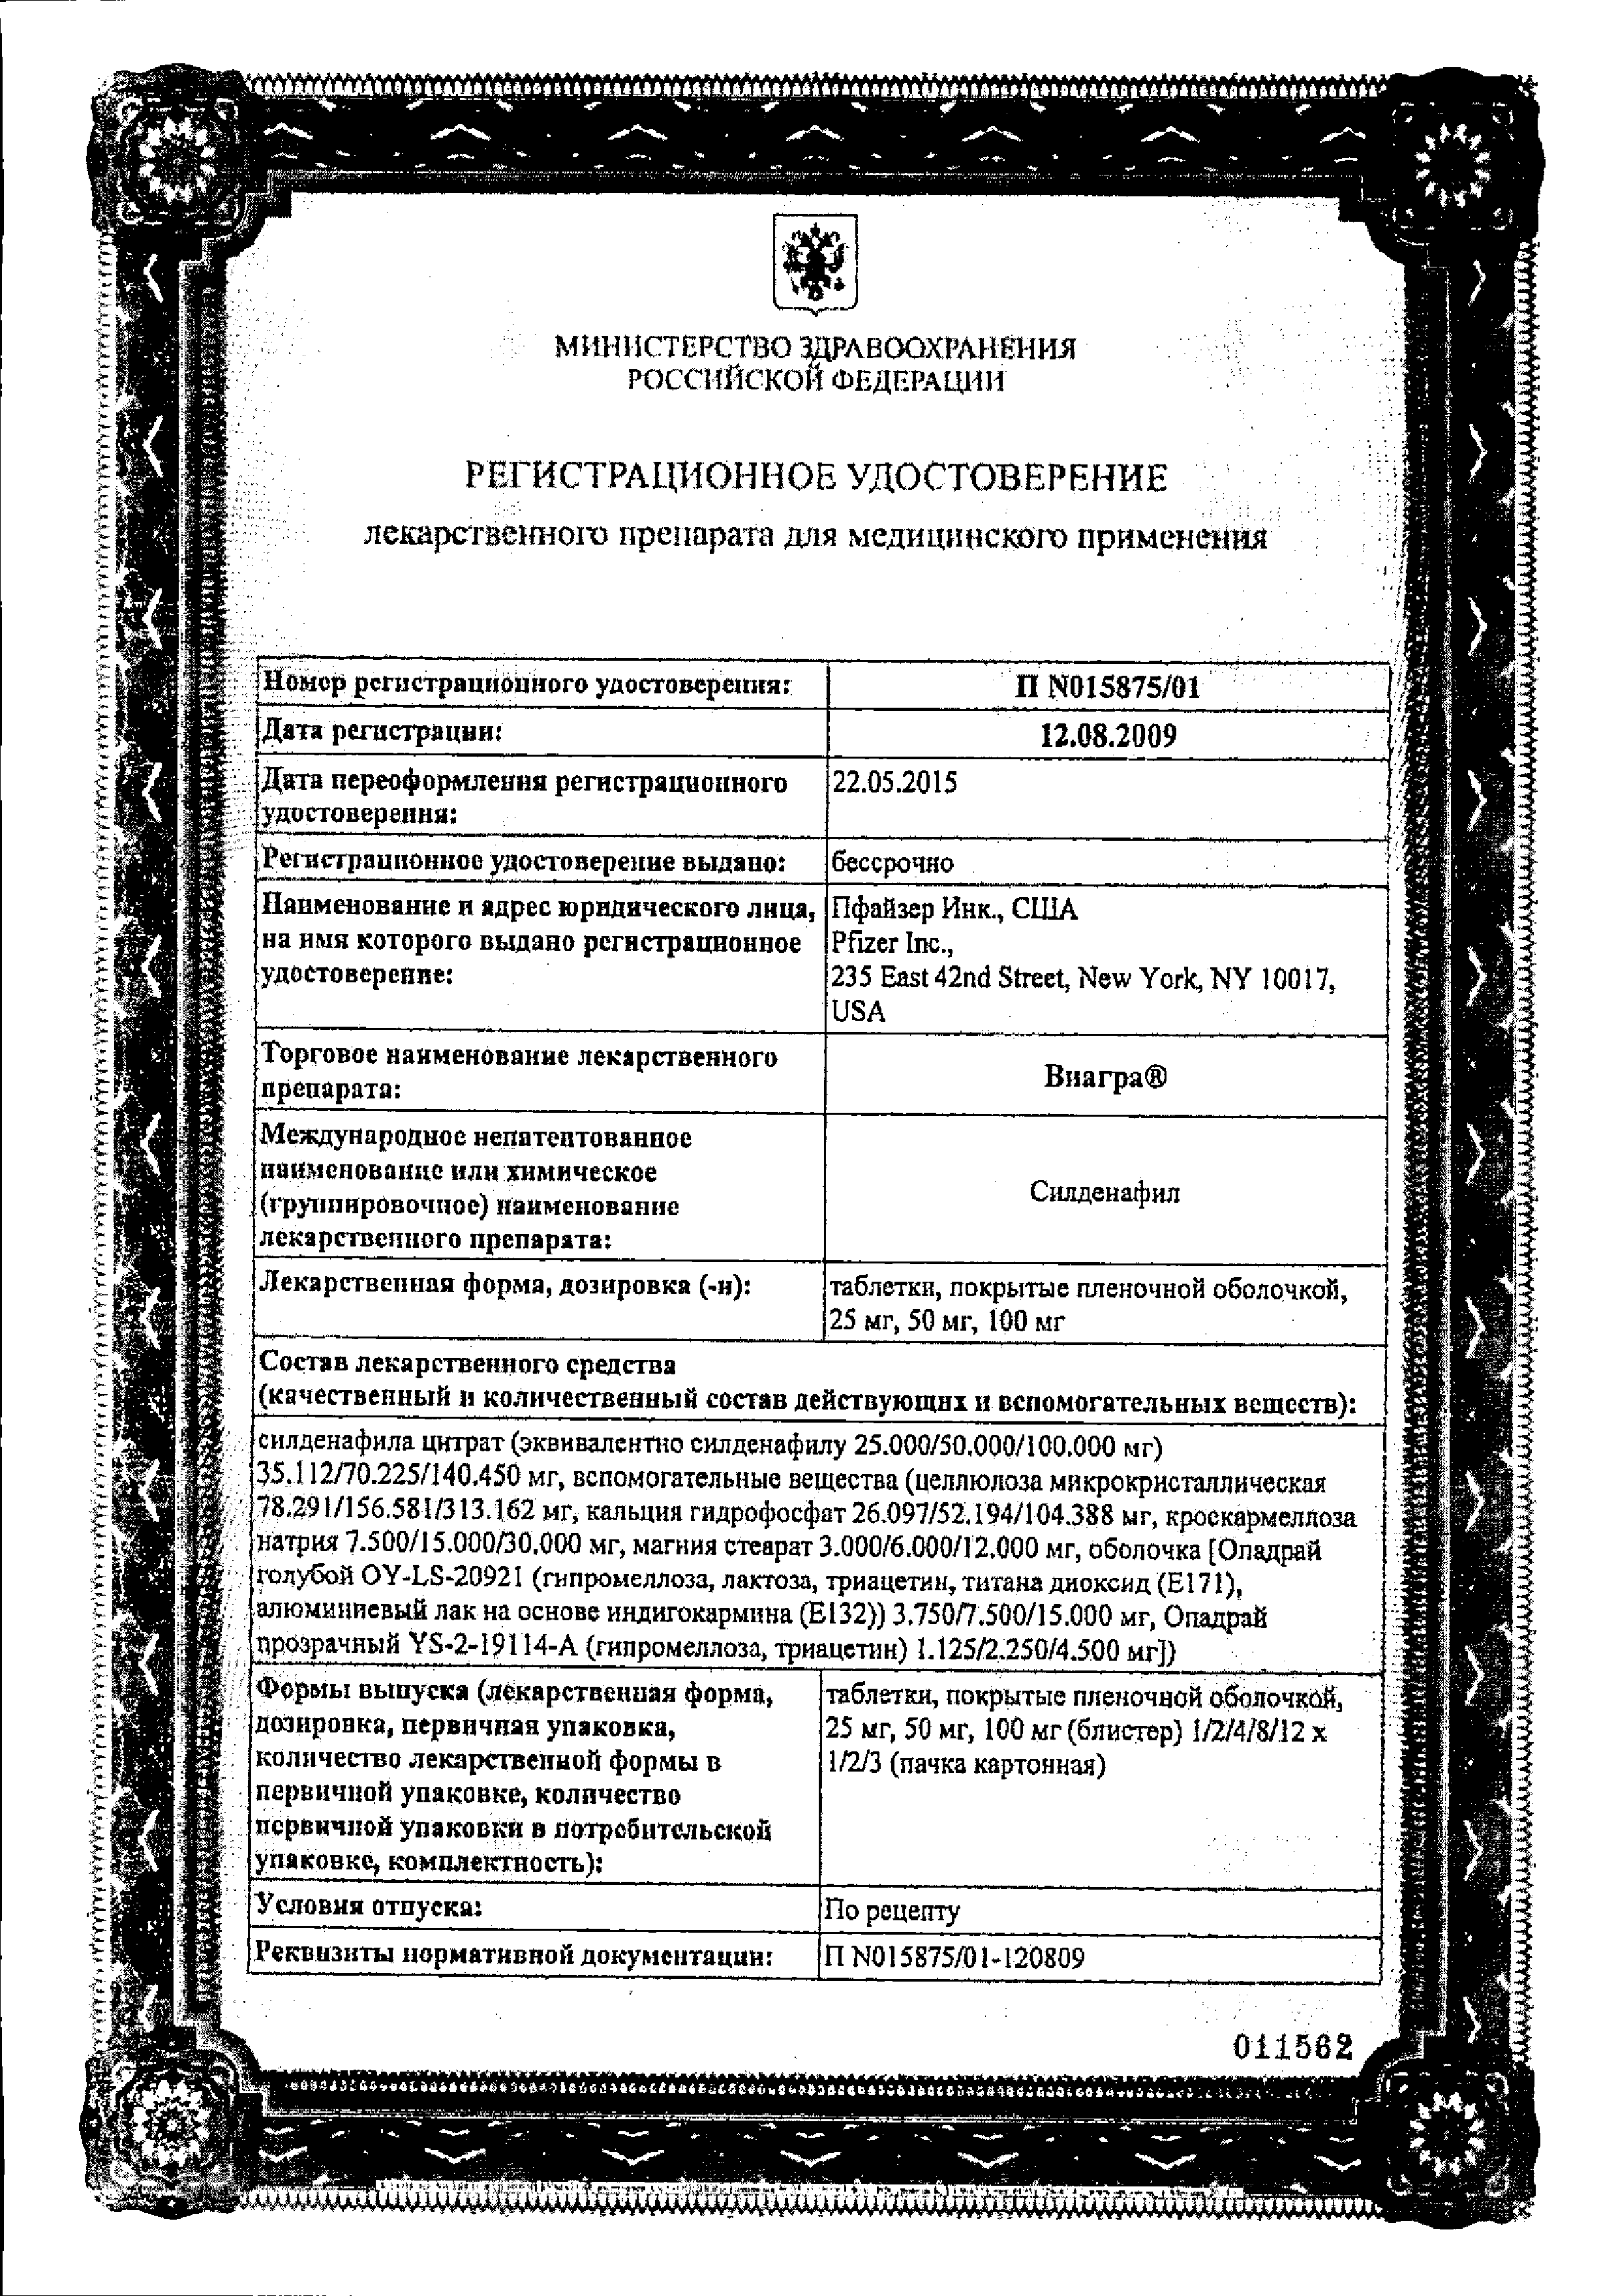 Виагра сертификат